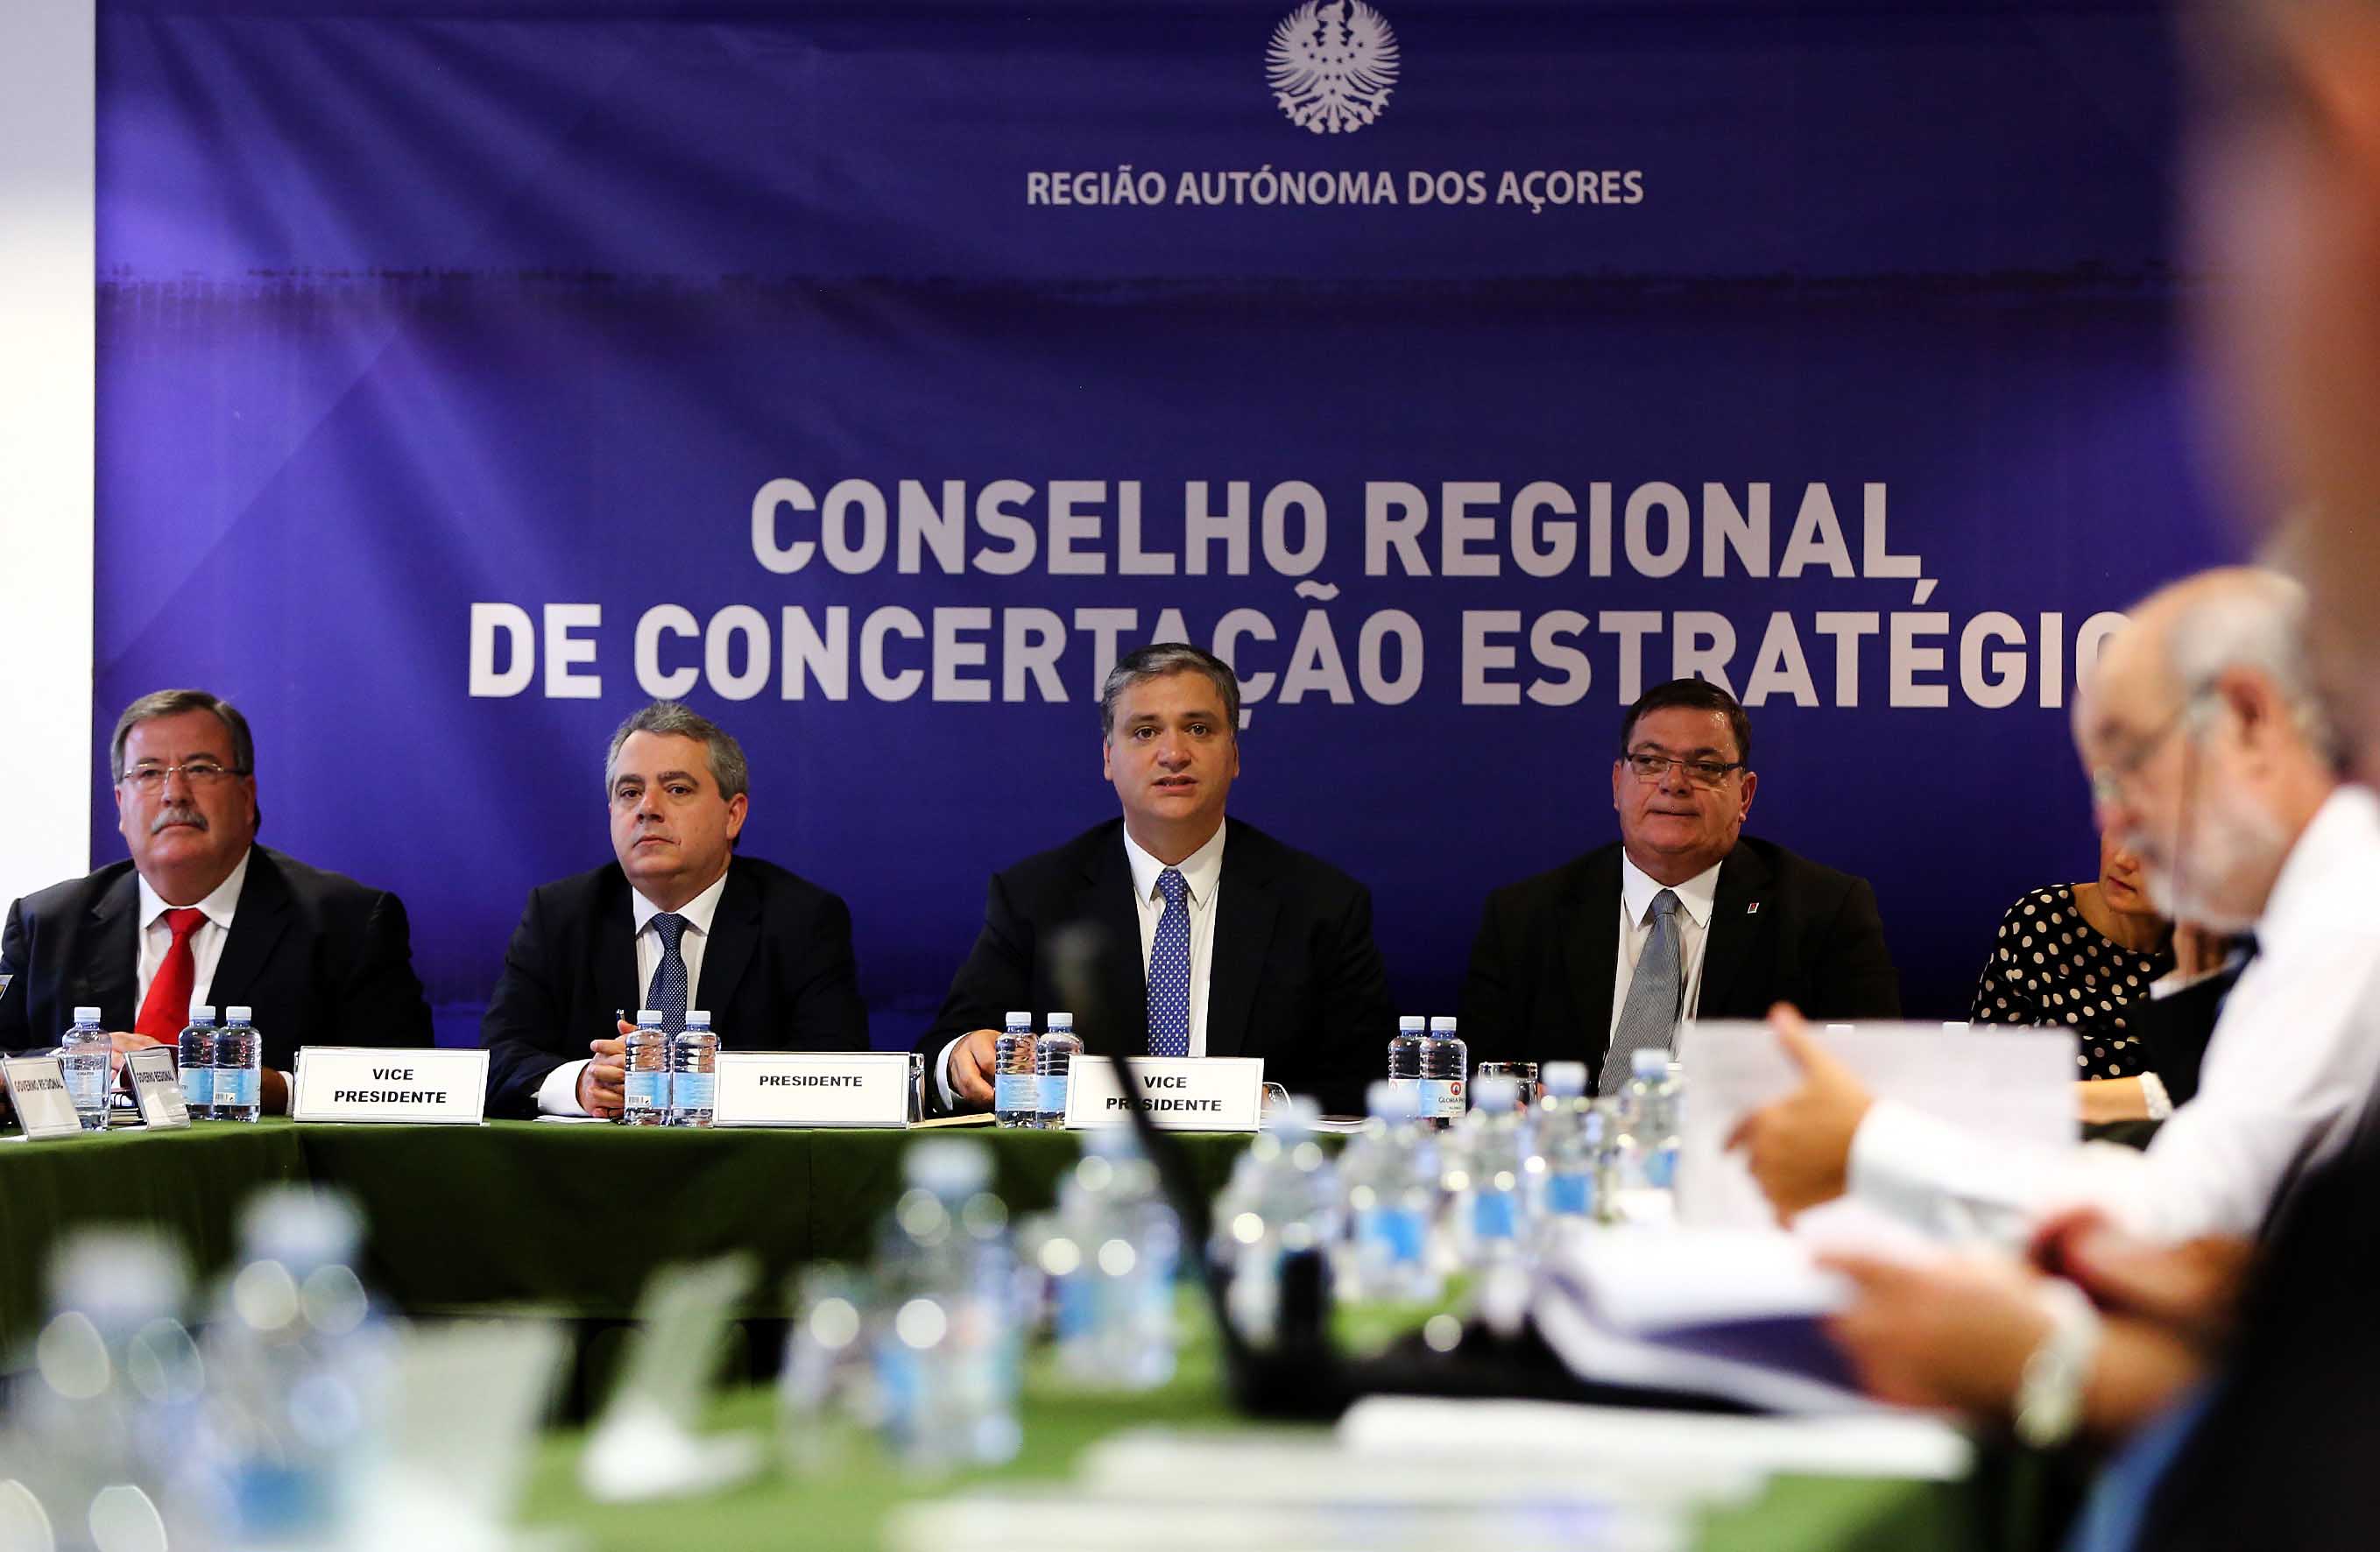 Governo dos Açores prevê investimento público de 731 milhões de euros em 2015, revela Sérgio Ávila